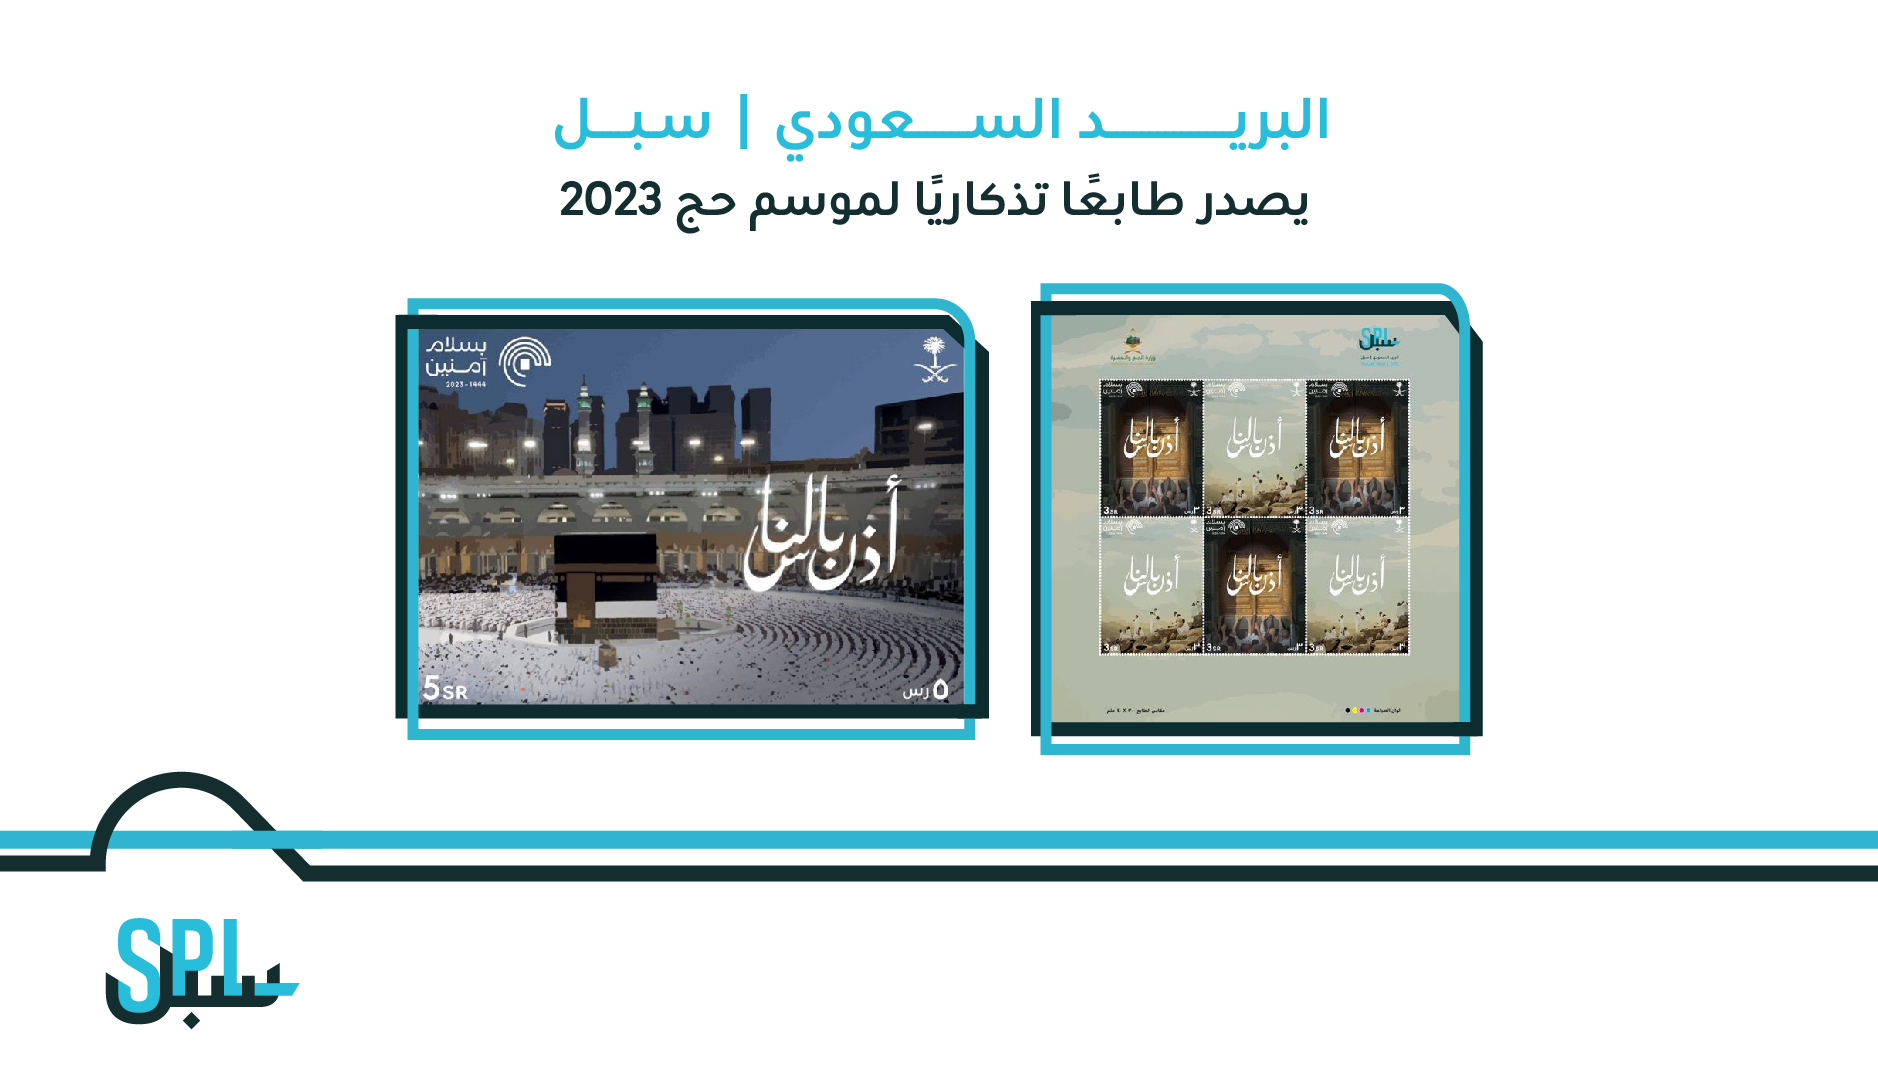 البريد السعودي | سبل يصدر طابعًا تذكاريًا لموسم حج 2023